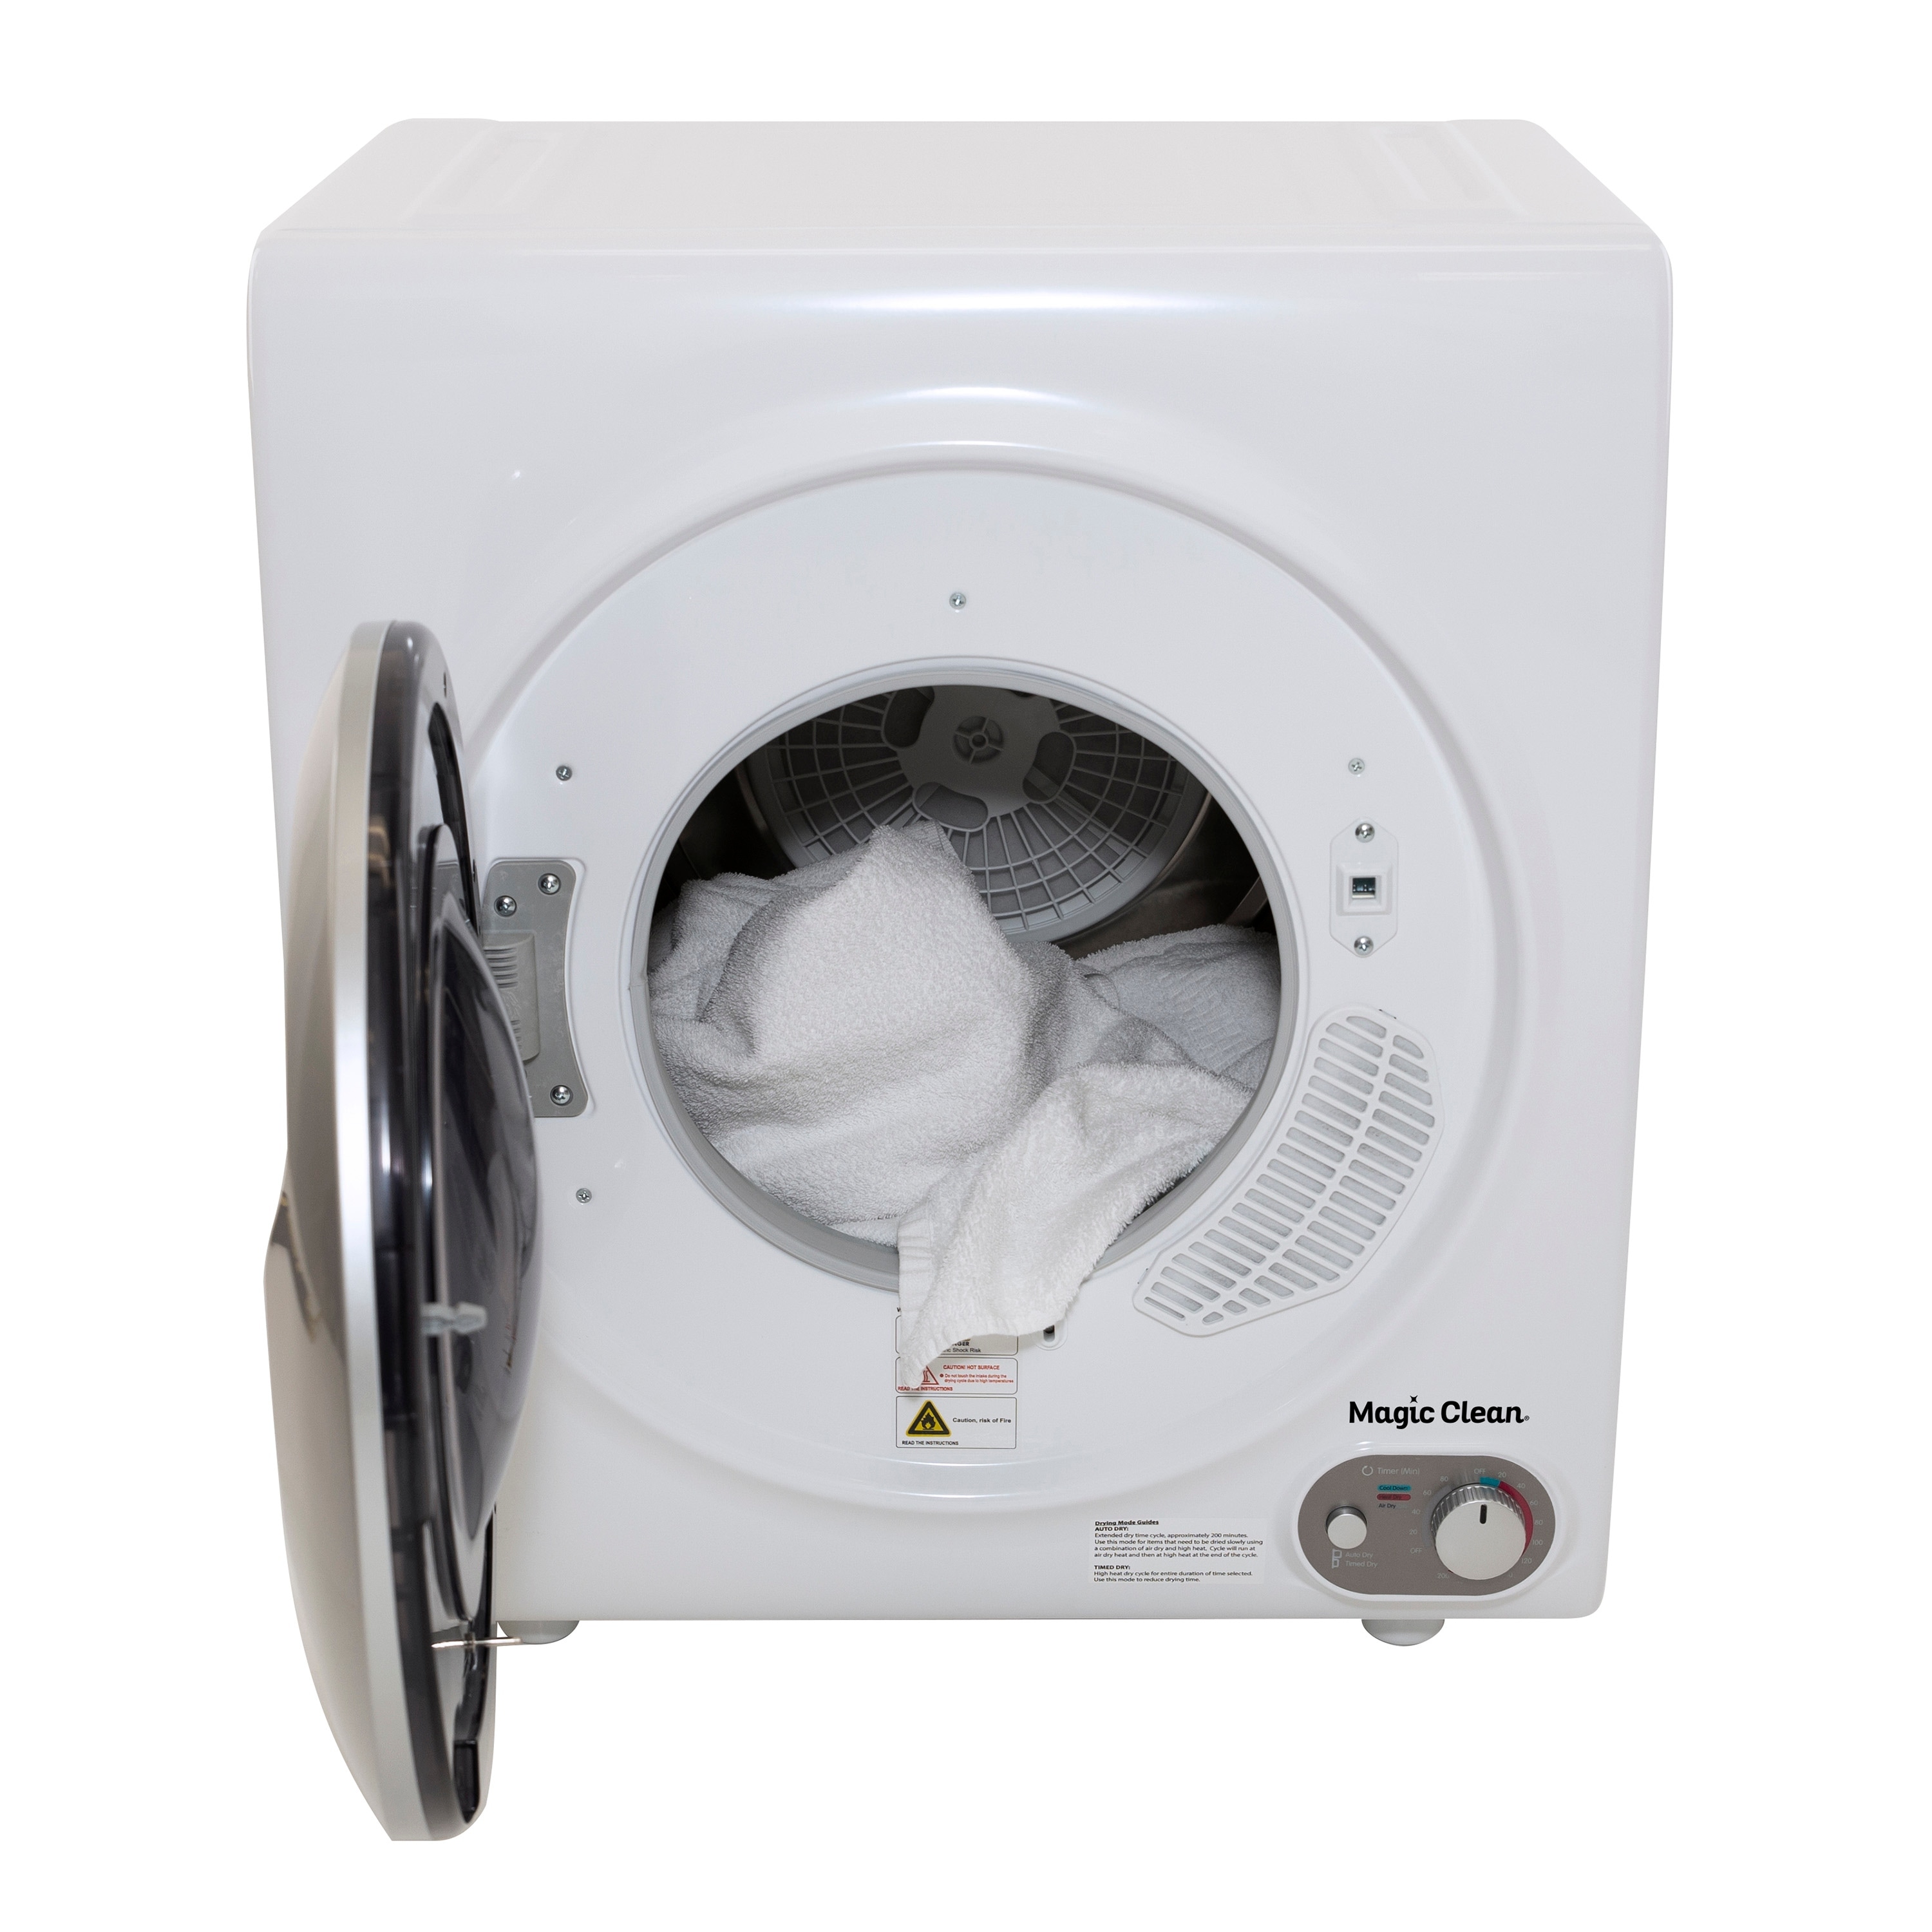 Avanti 1.38 cu. ft. Compact Top Loader Washer Machine, in White